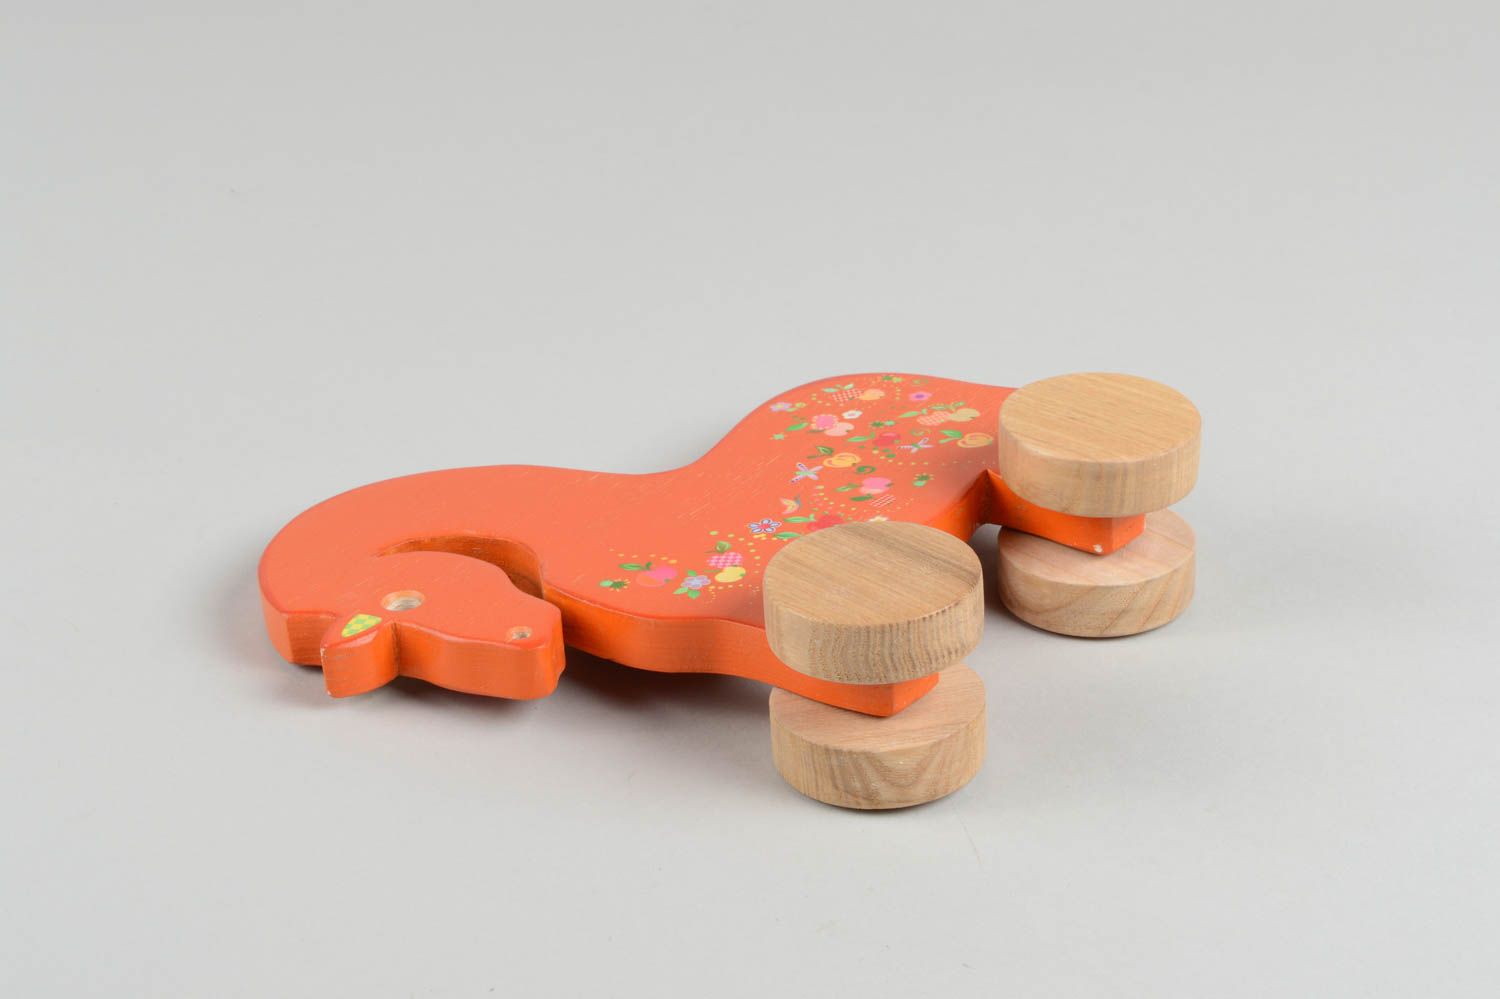 Игрушка ручной работы игрушка из дерева оранжевая лошадка игрушка-каталка фото 3